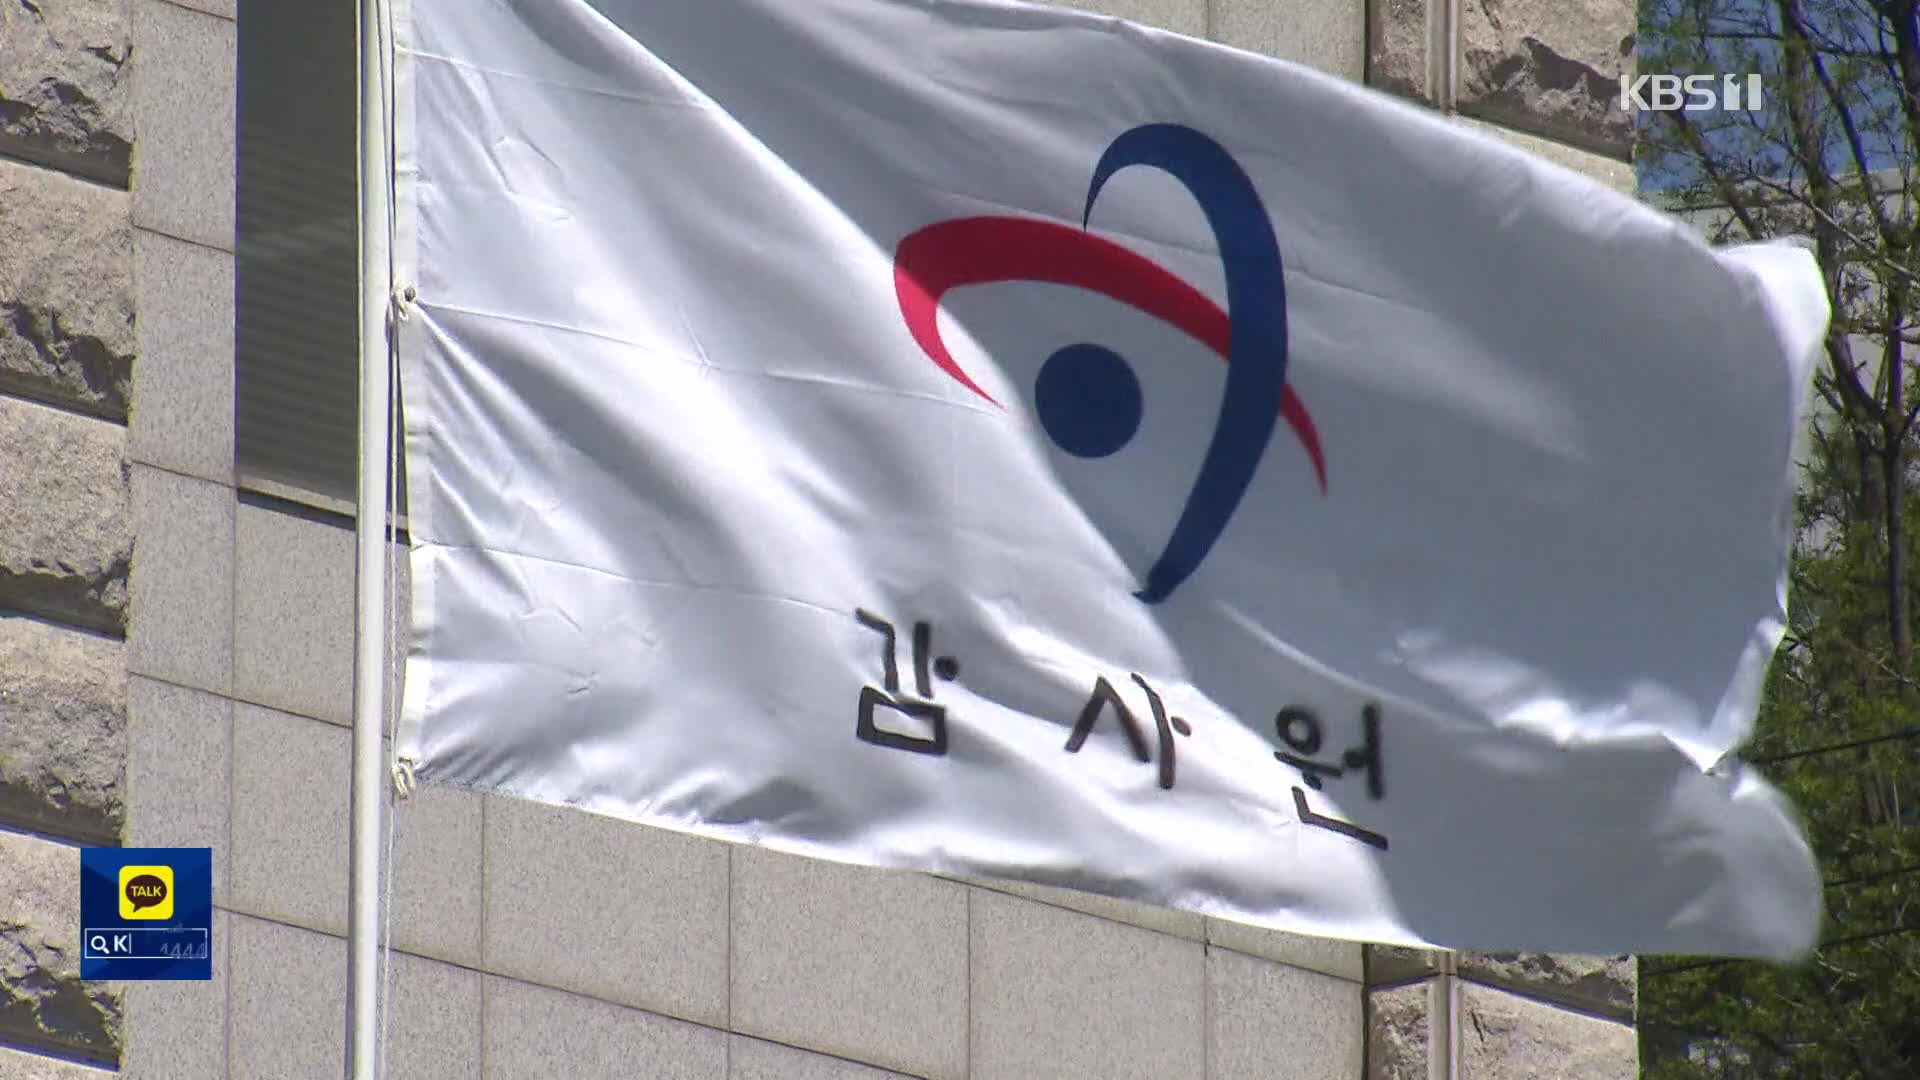 ‘세종 특공’ 부적격자 76명 계약까지…장관 직인 위조도